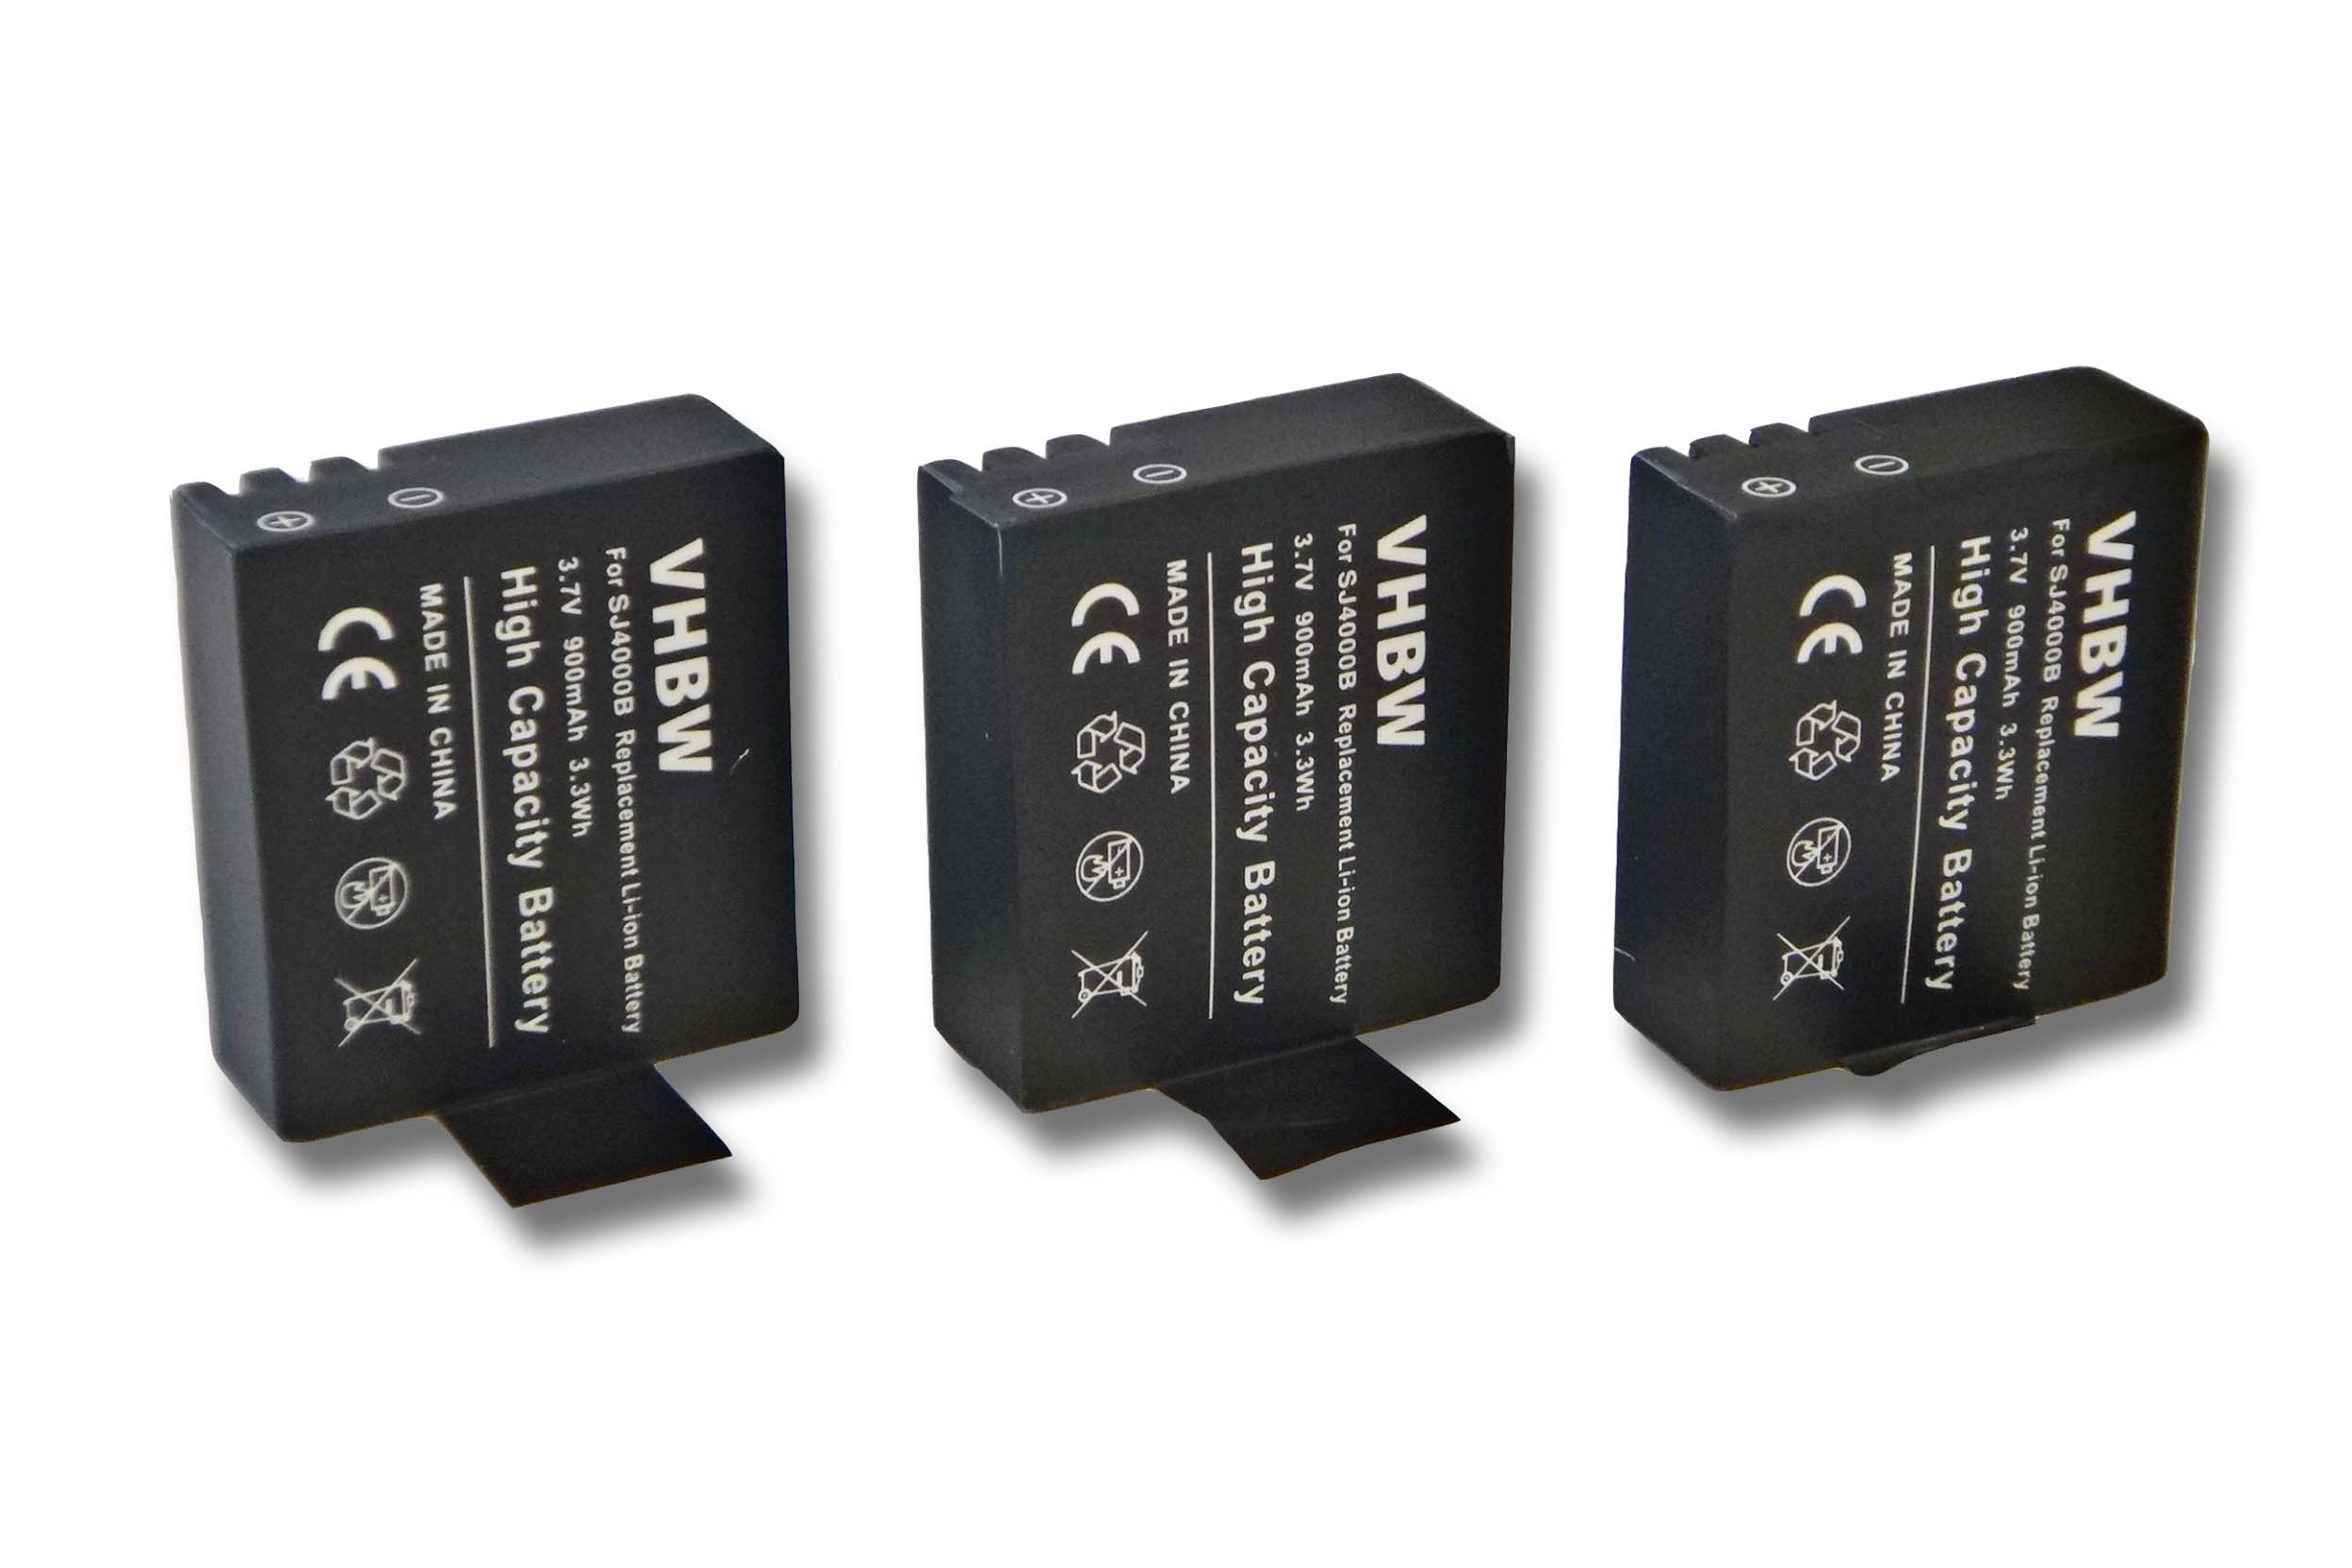 VHBW kompatibel mit Lightdow LD4000 Videokamera, 3.7 - 900 Li-Ion Akku Volt